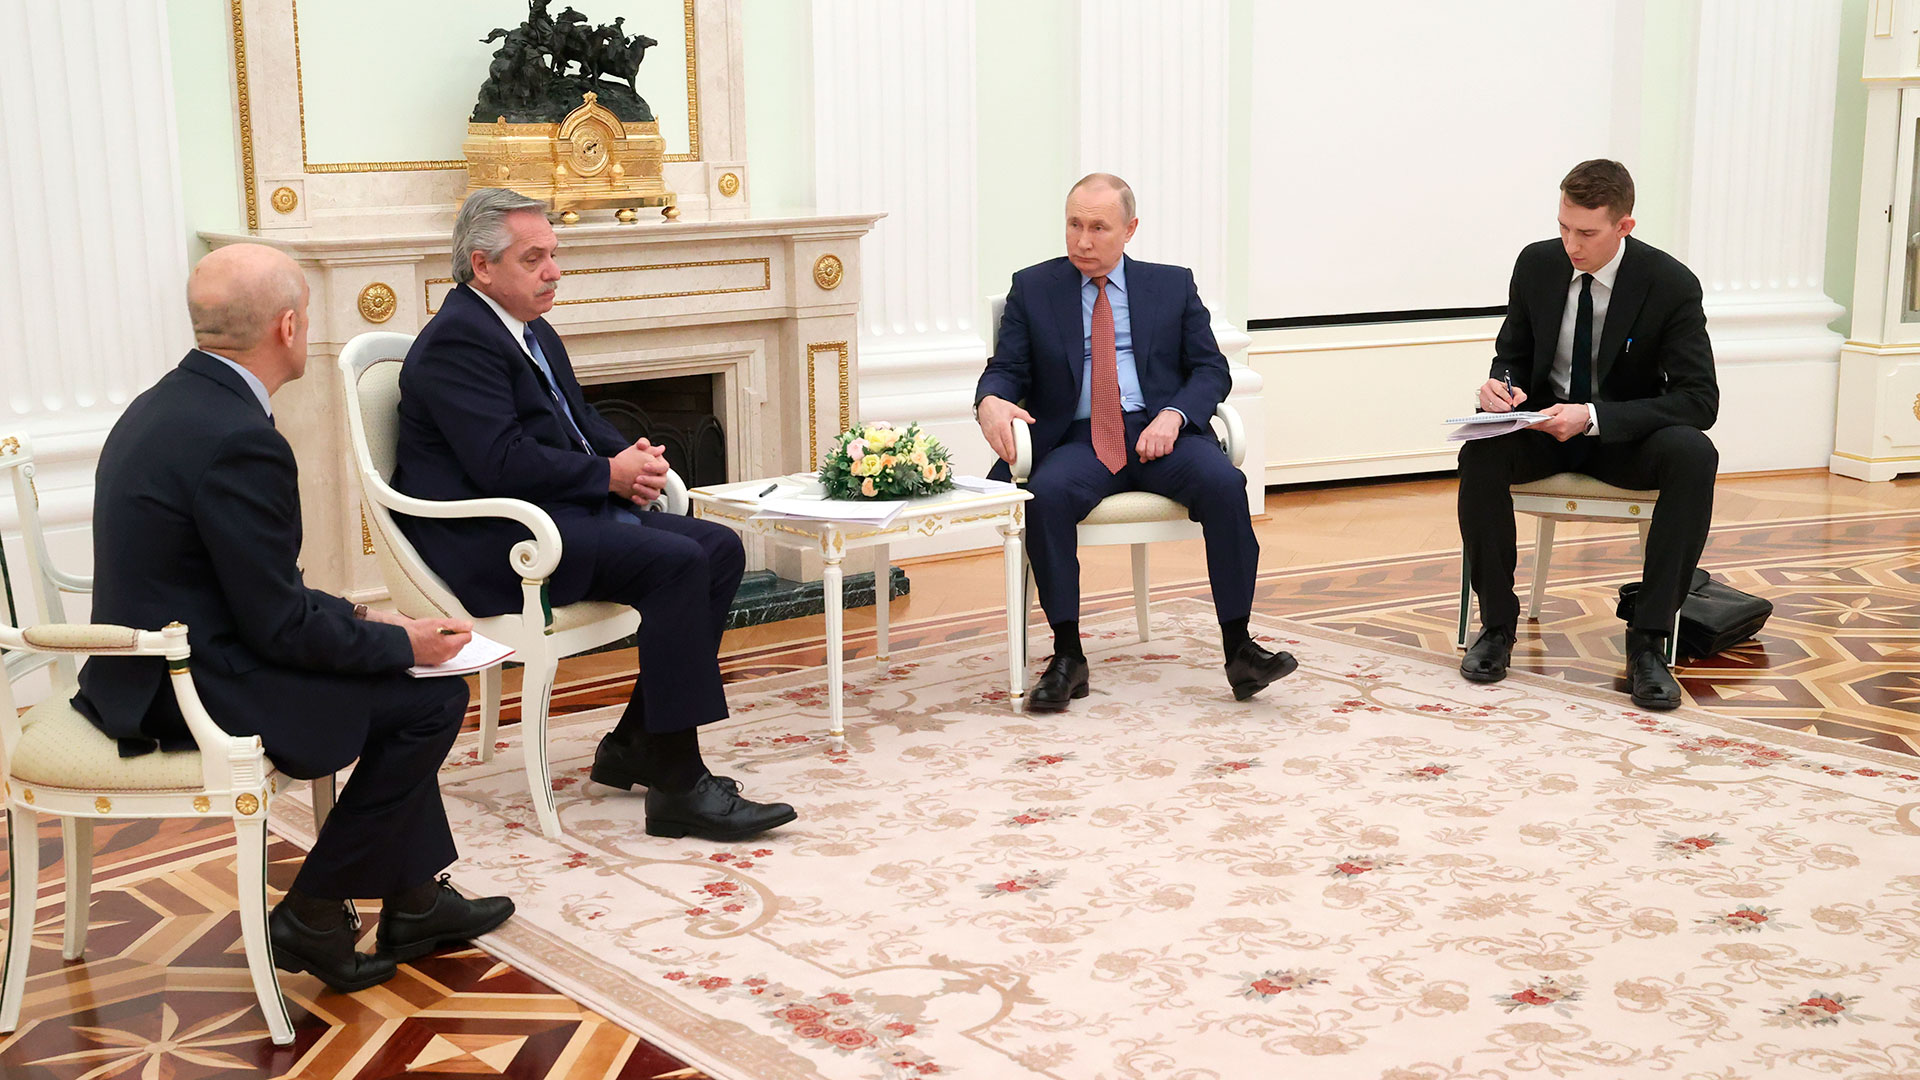 Alberto Fernández y Vladimir Putin, junto a sus respectivos traductores, durante la reunión en el Kremlin